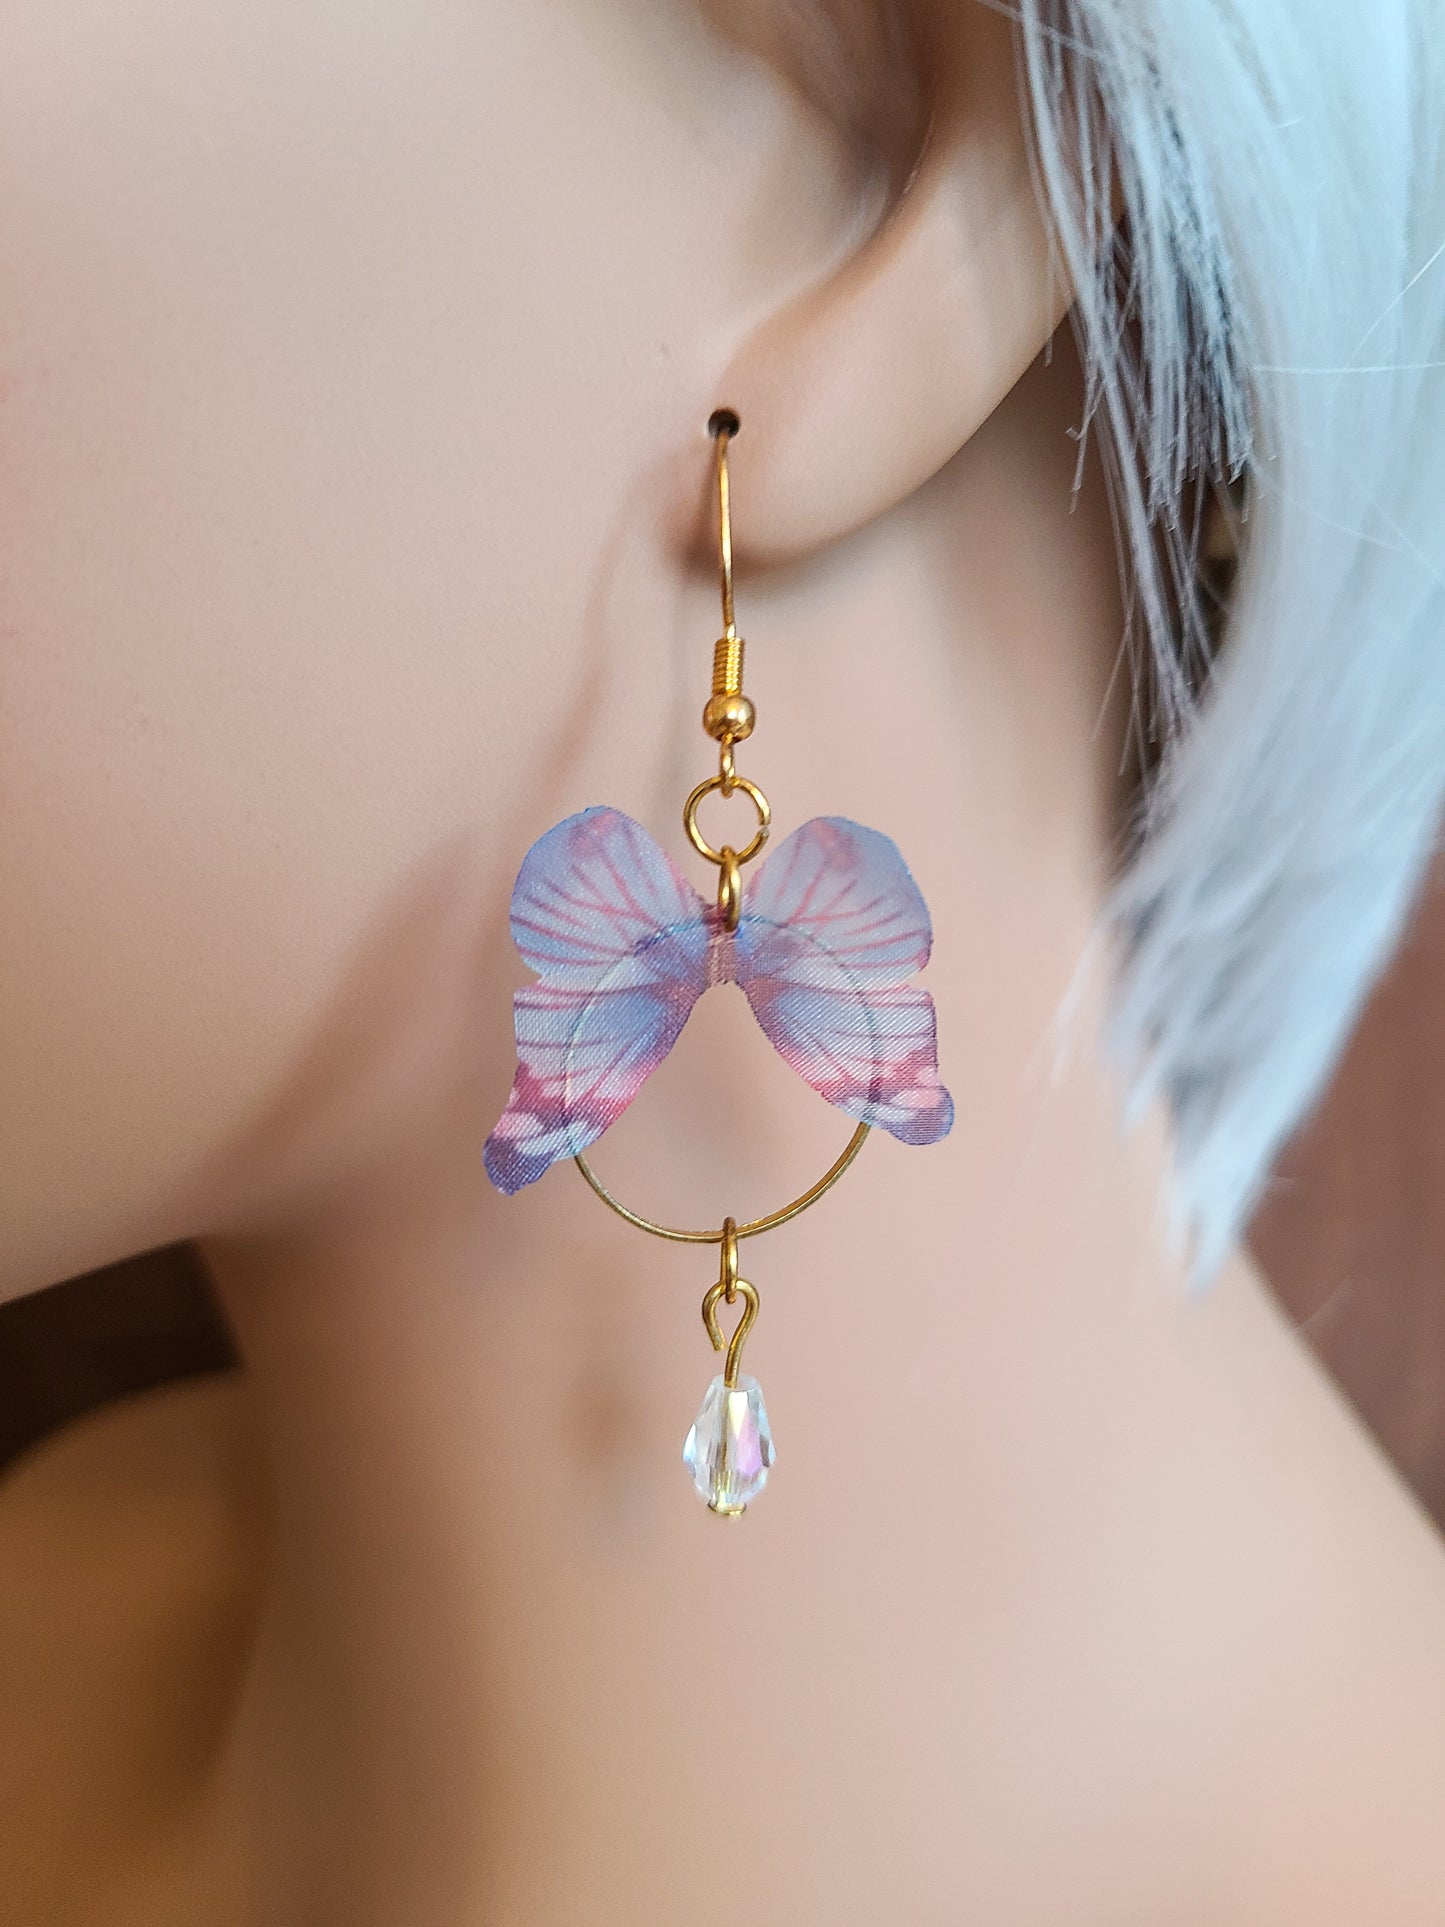 Purple Butterfly Gold Hoop Earrings